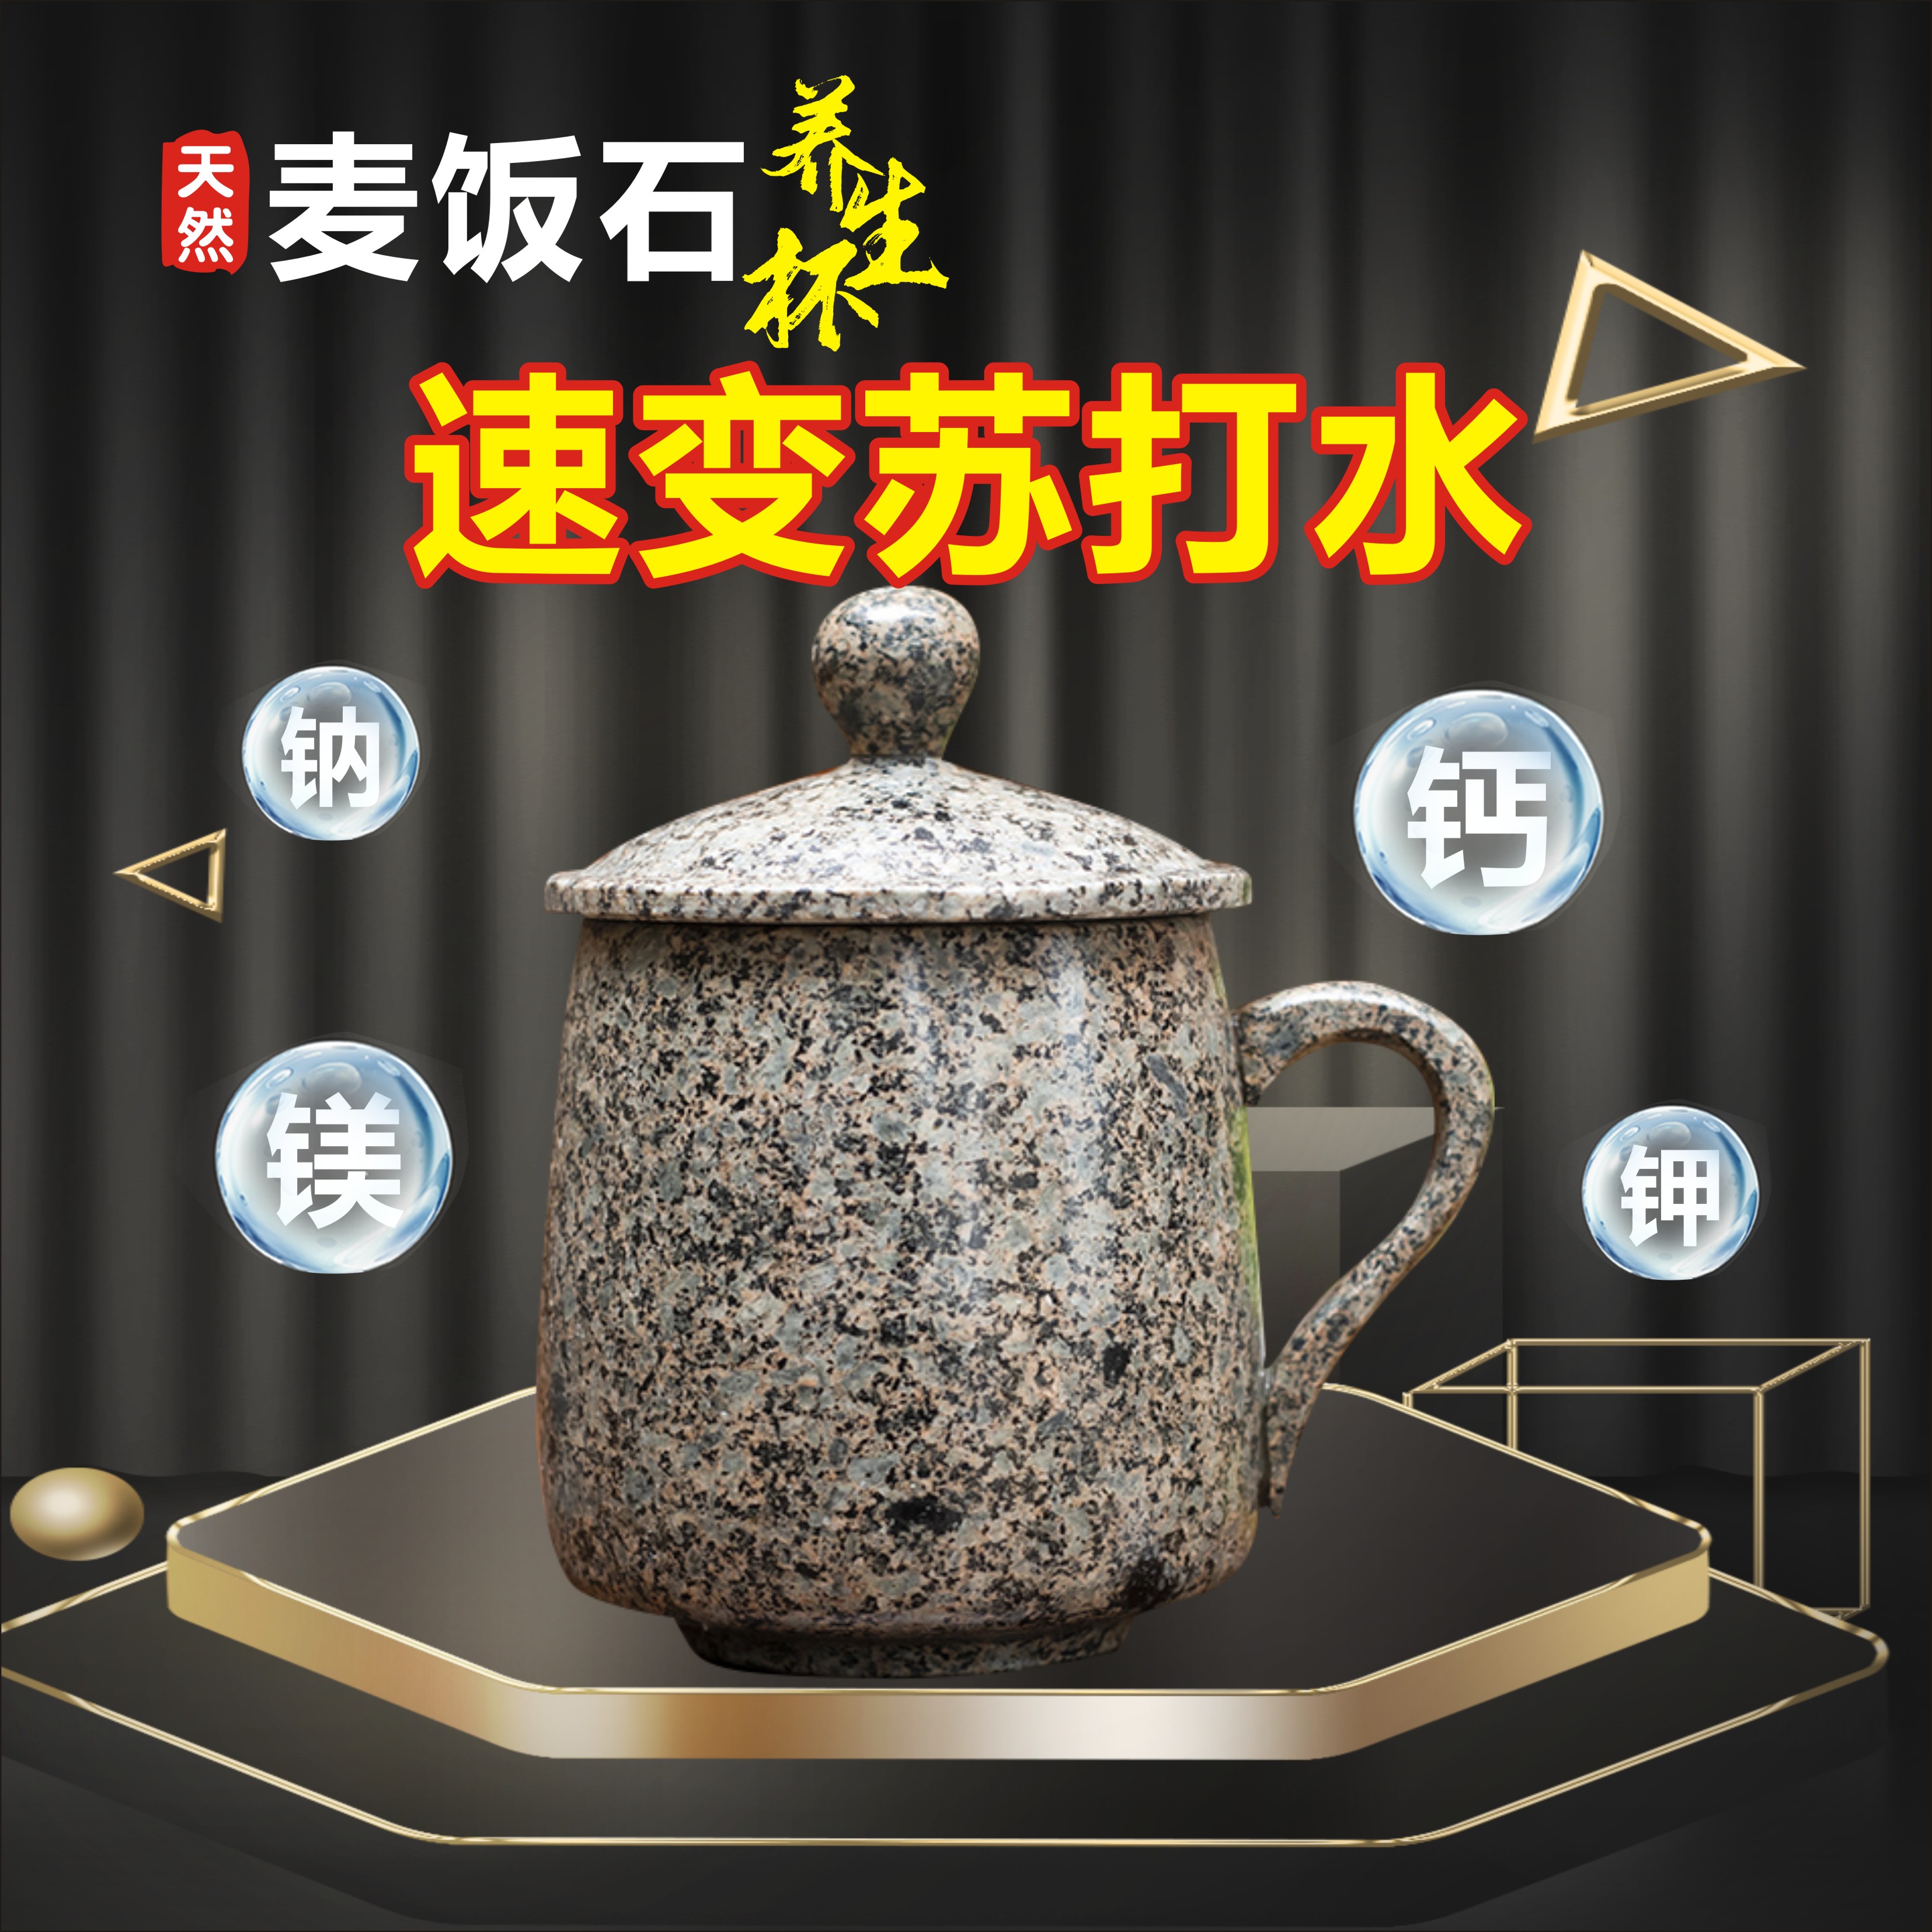 天然麦饭石水杯大容量喝水健康养生杯茶具礼品马克杯带盖创意茶杯